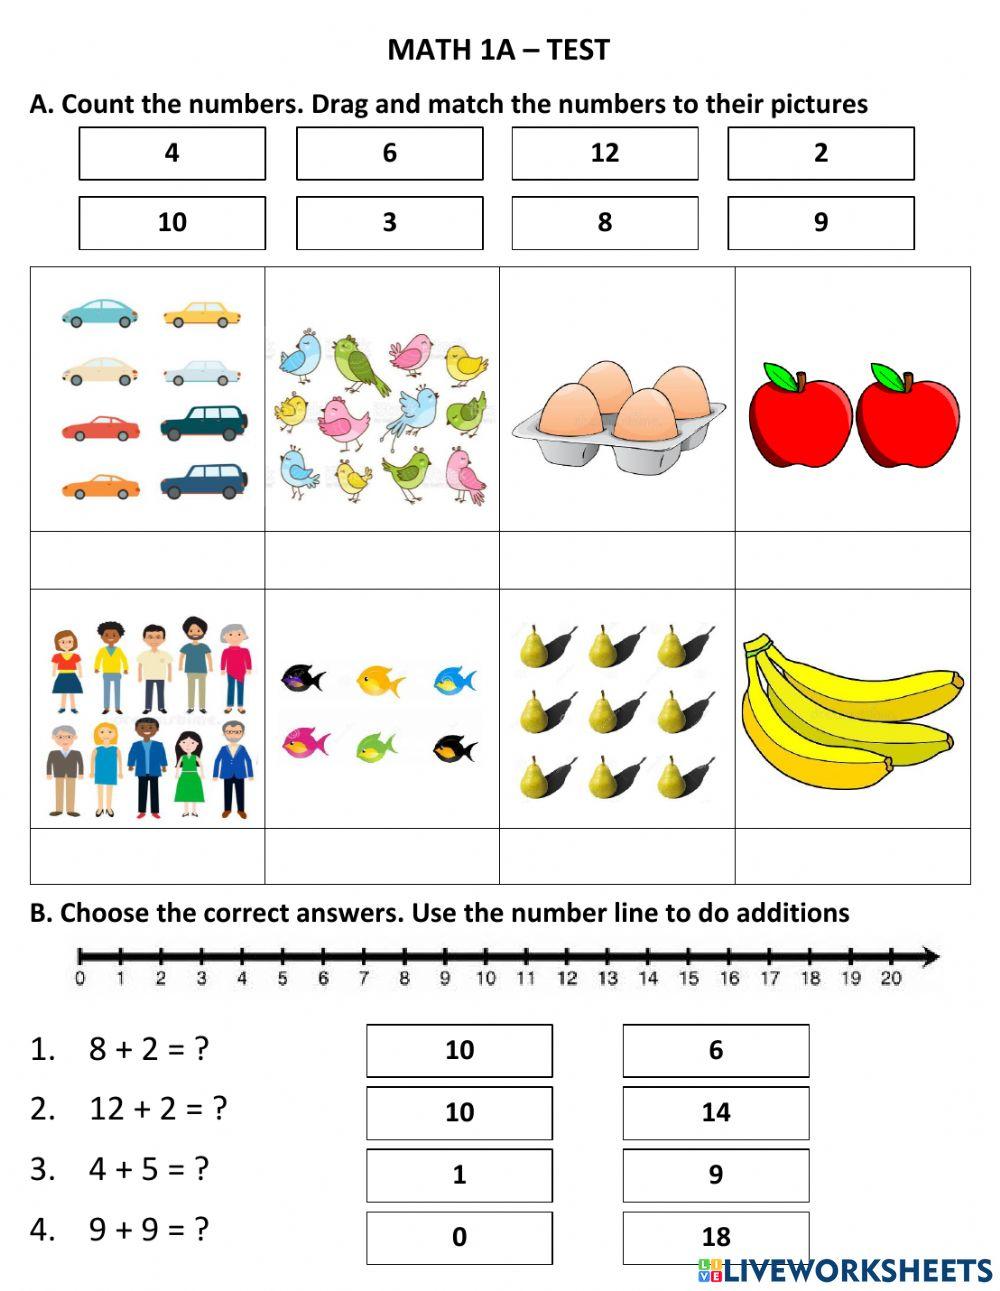 Math 1A - Test